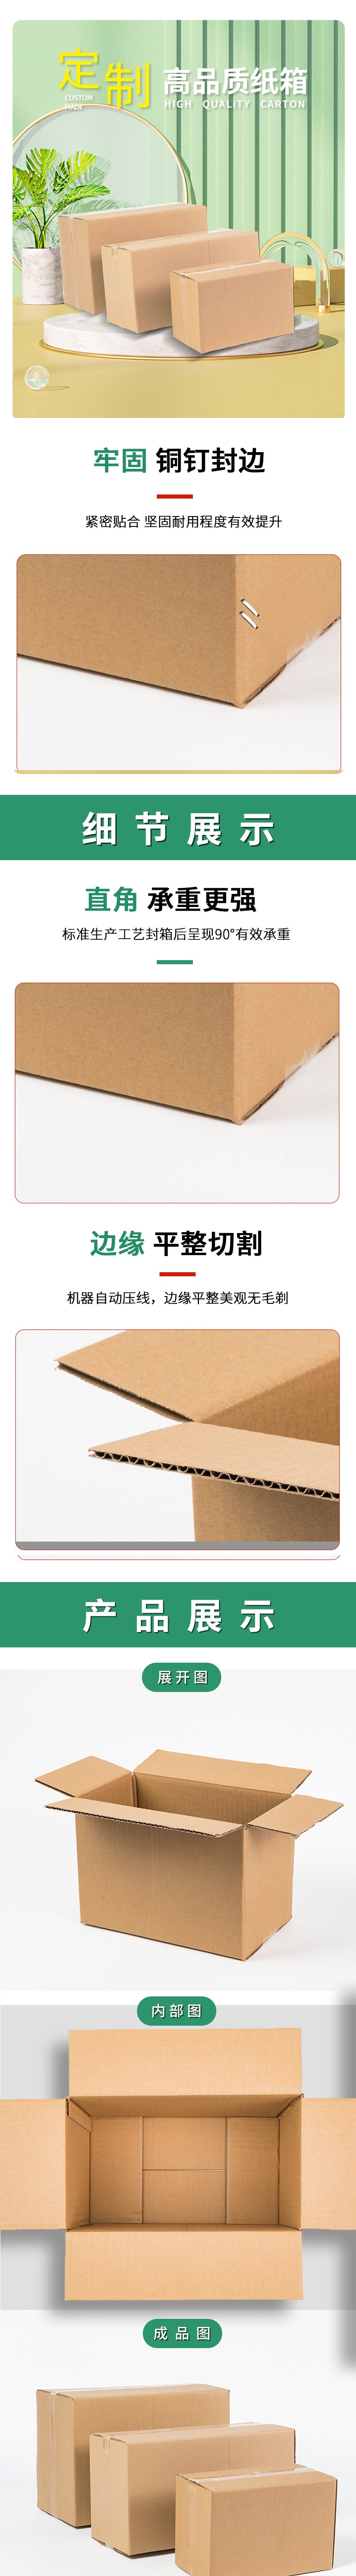 海口纸箱公司四色印刷包装箱设计制作